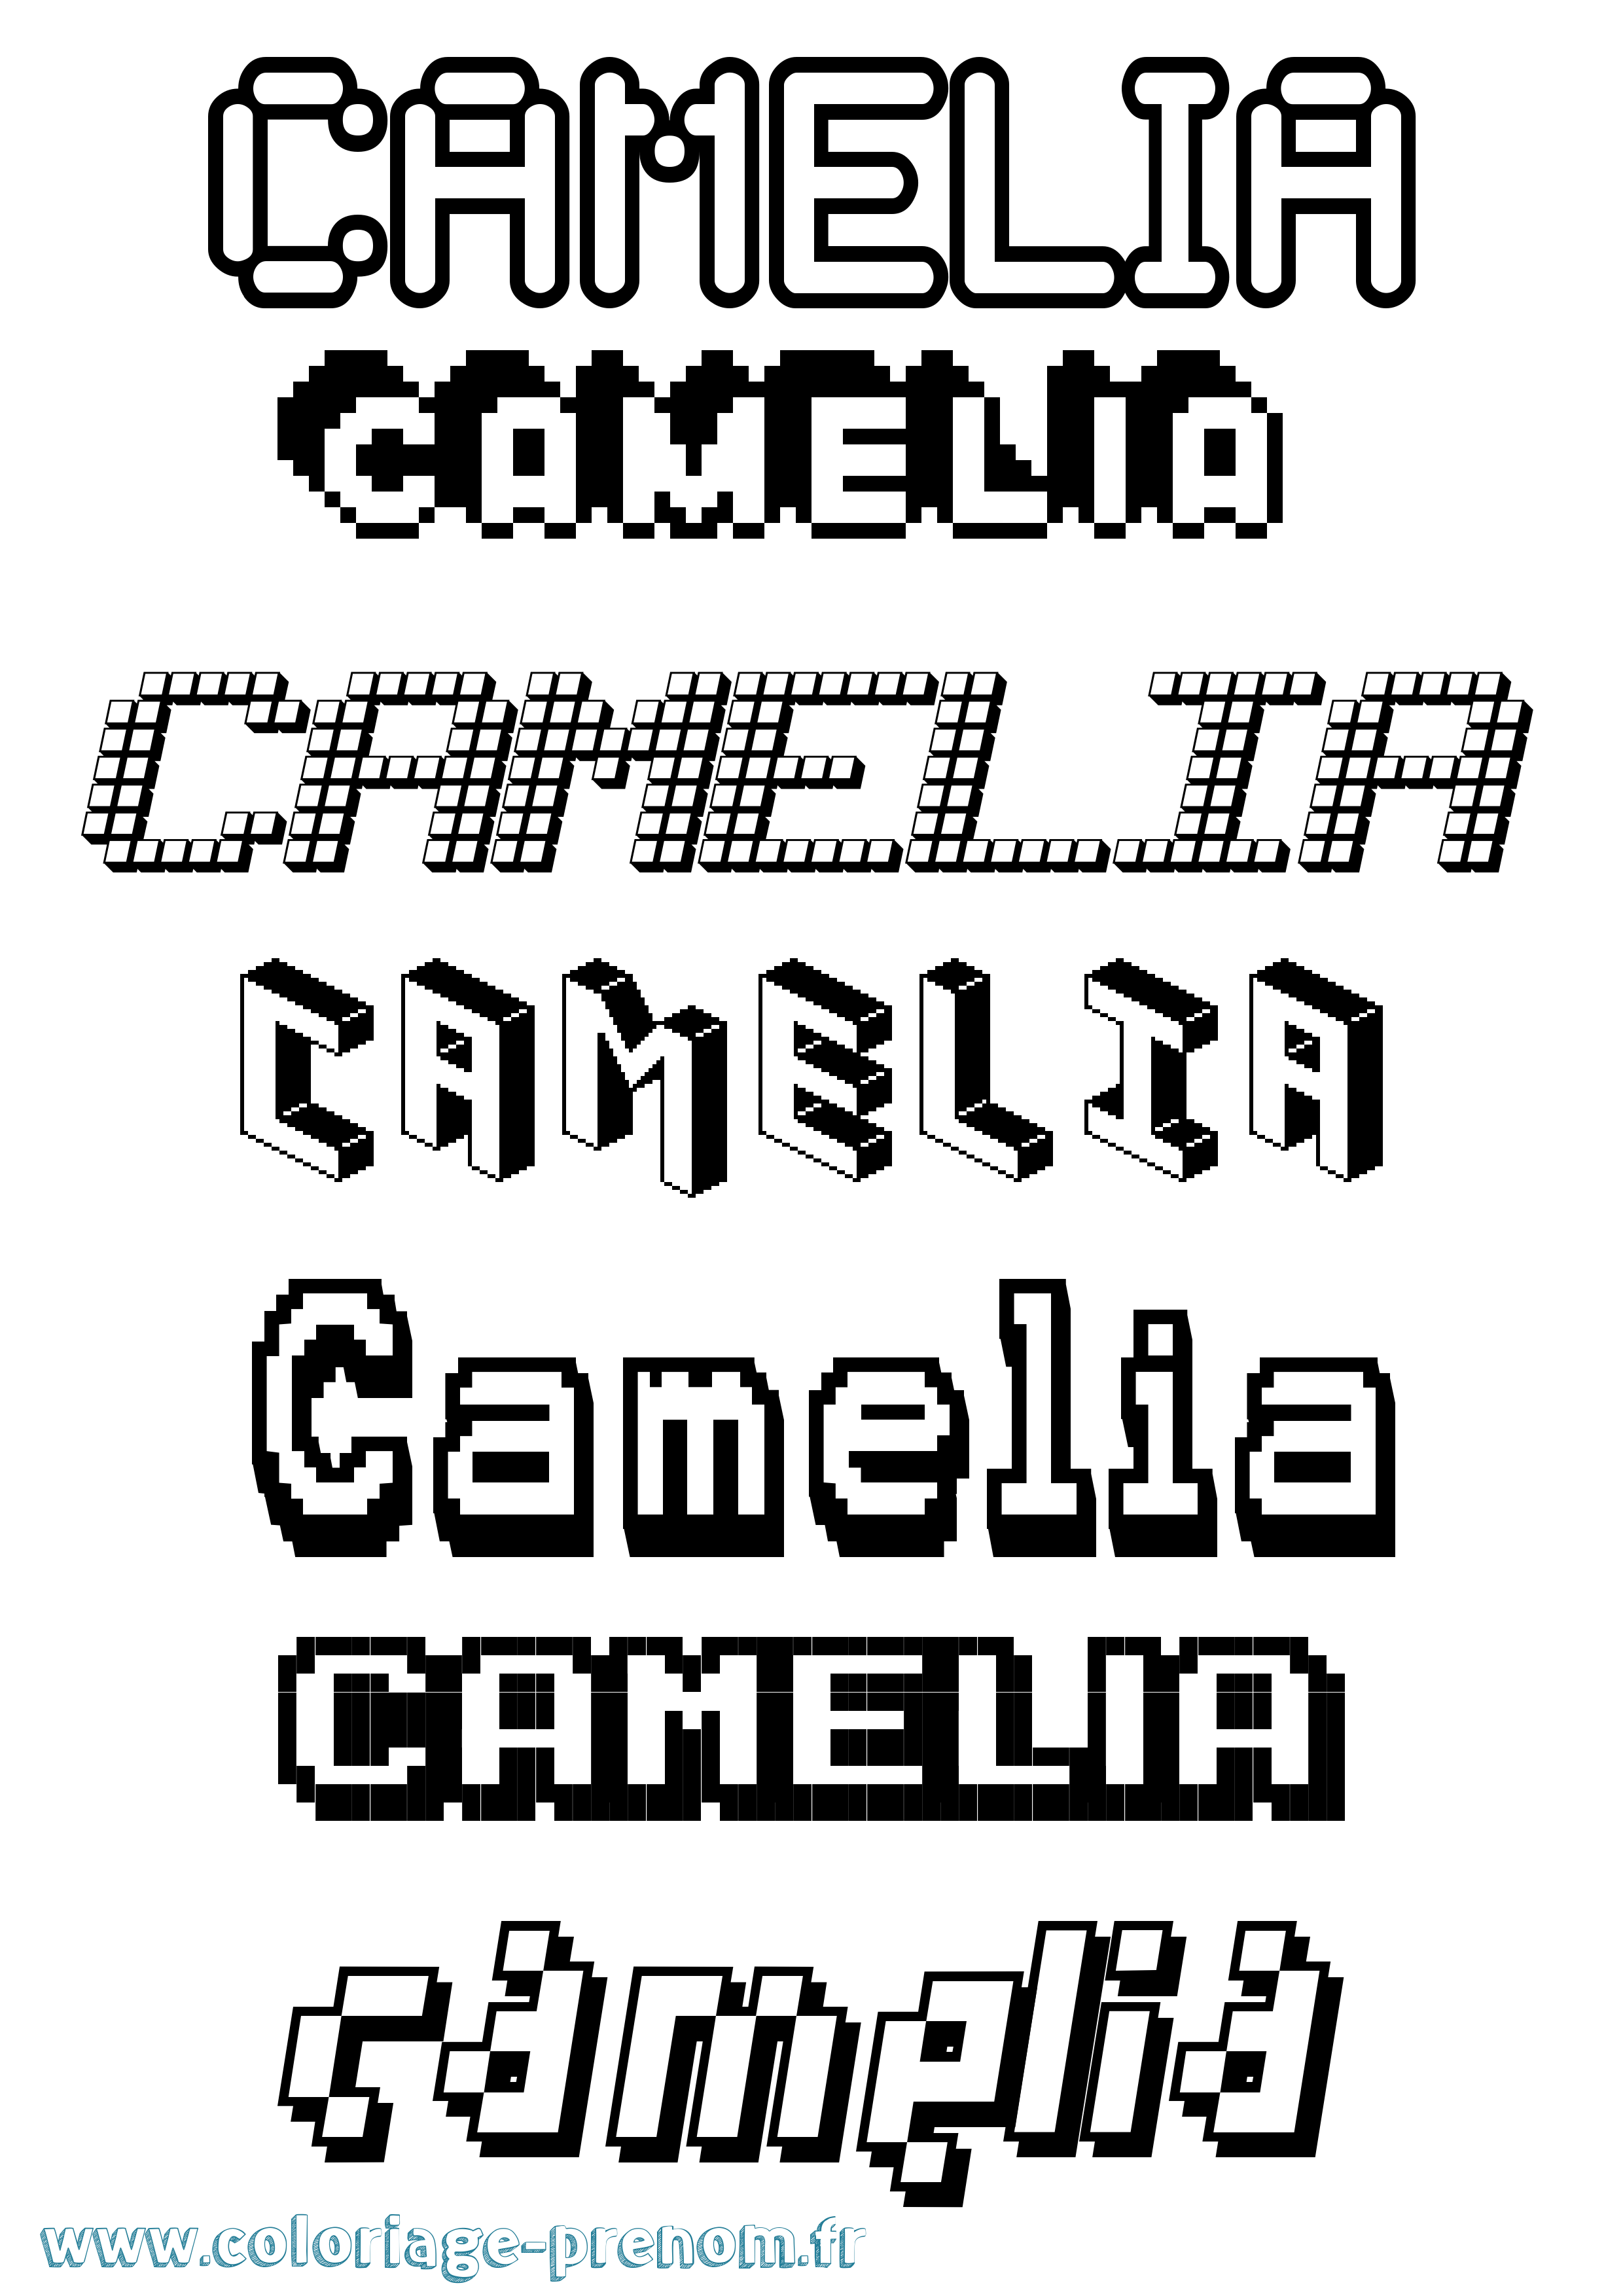 Coloriage prénom Camelia